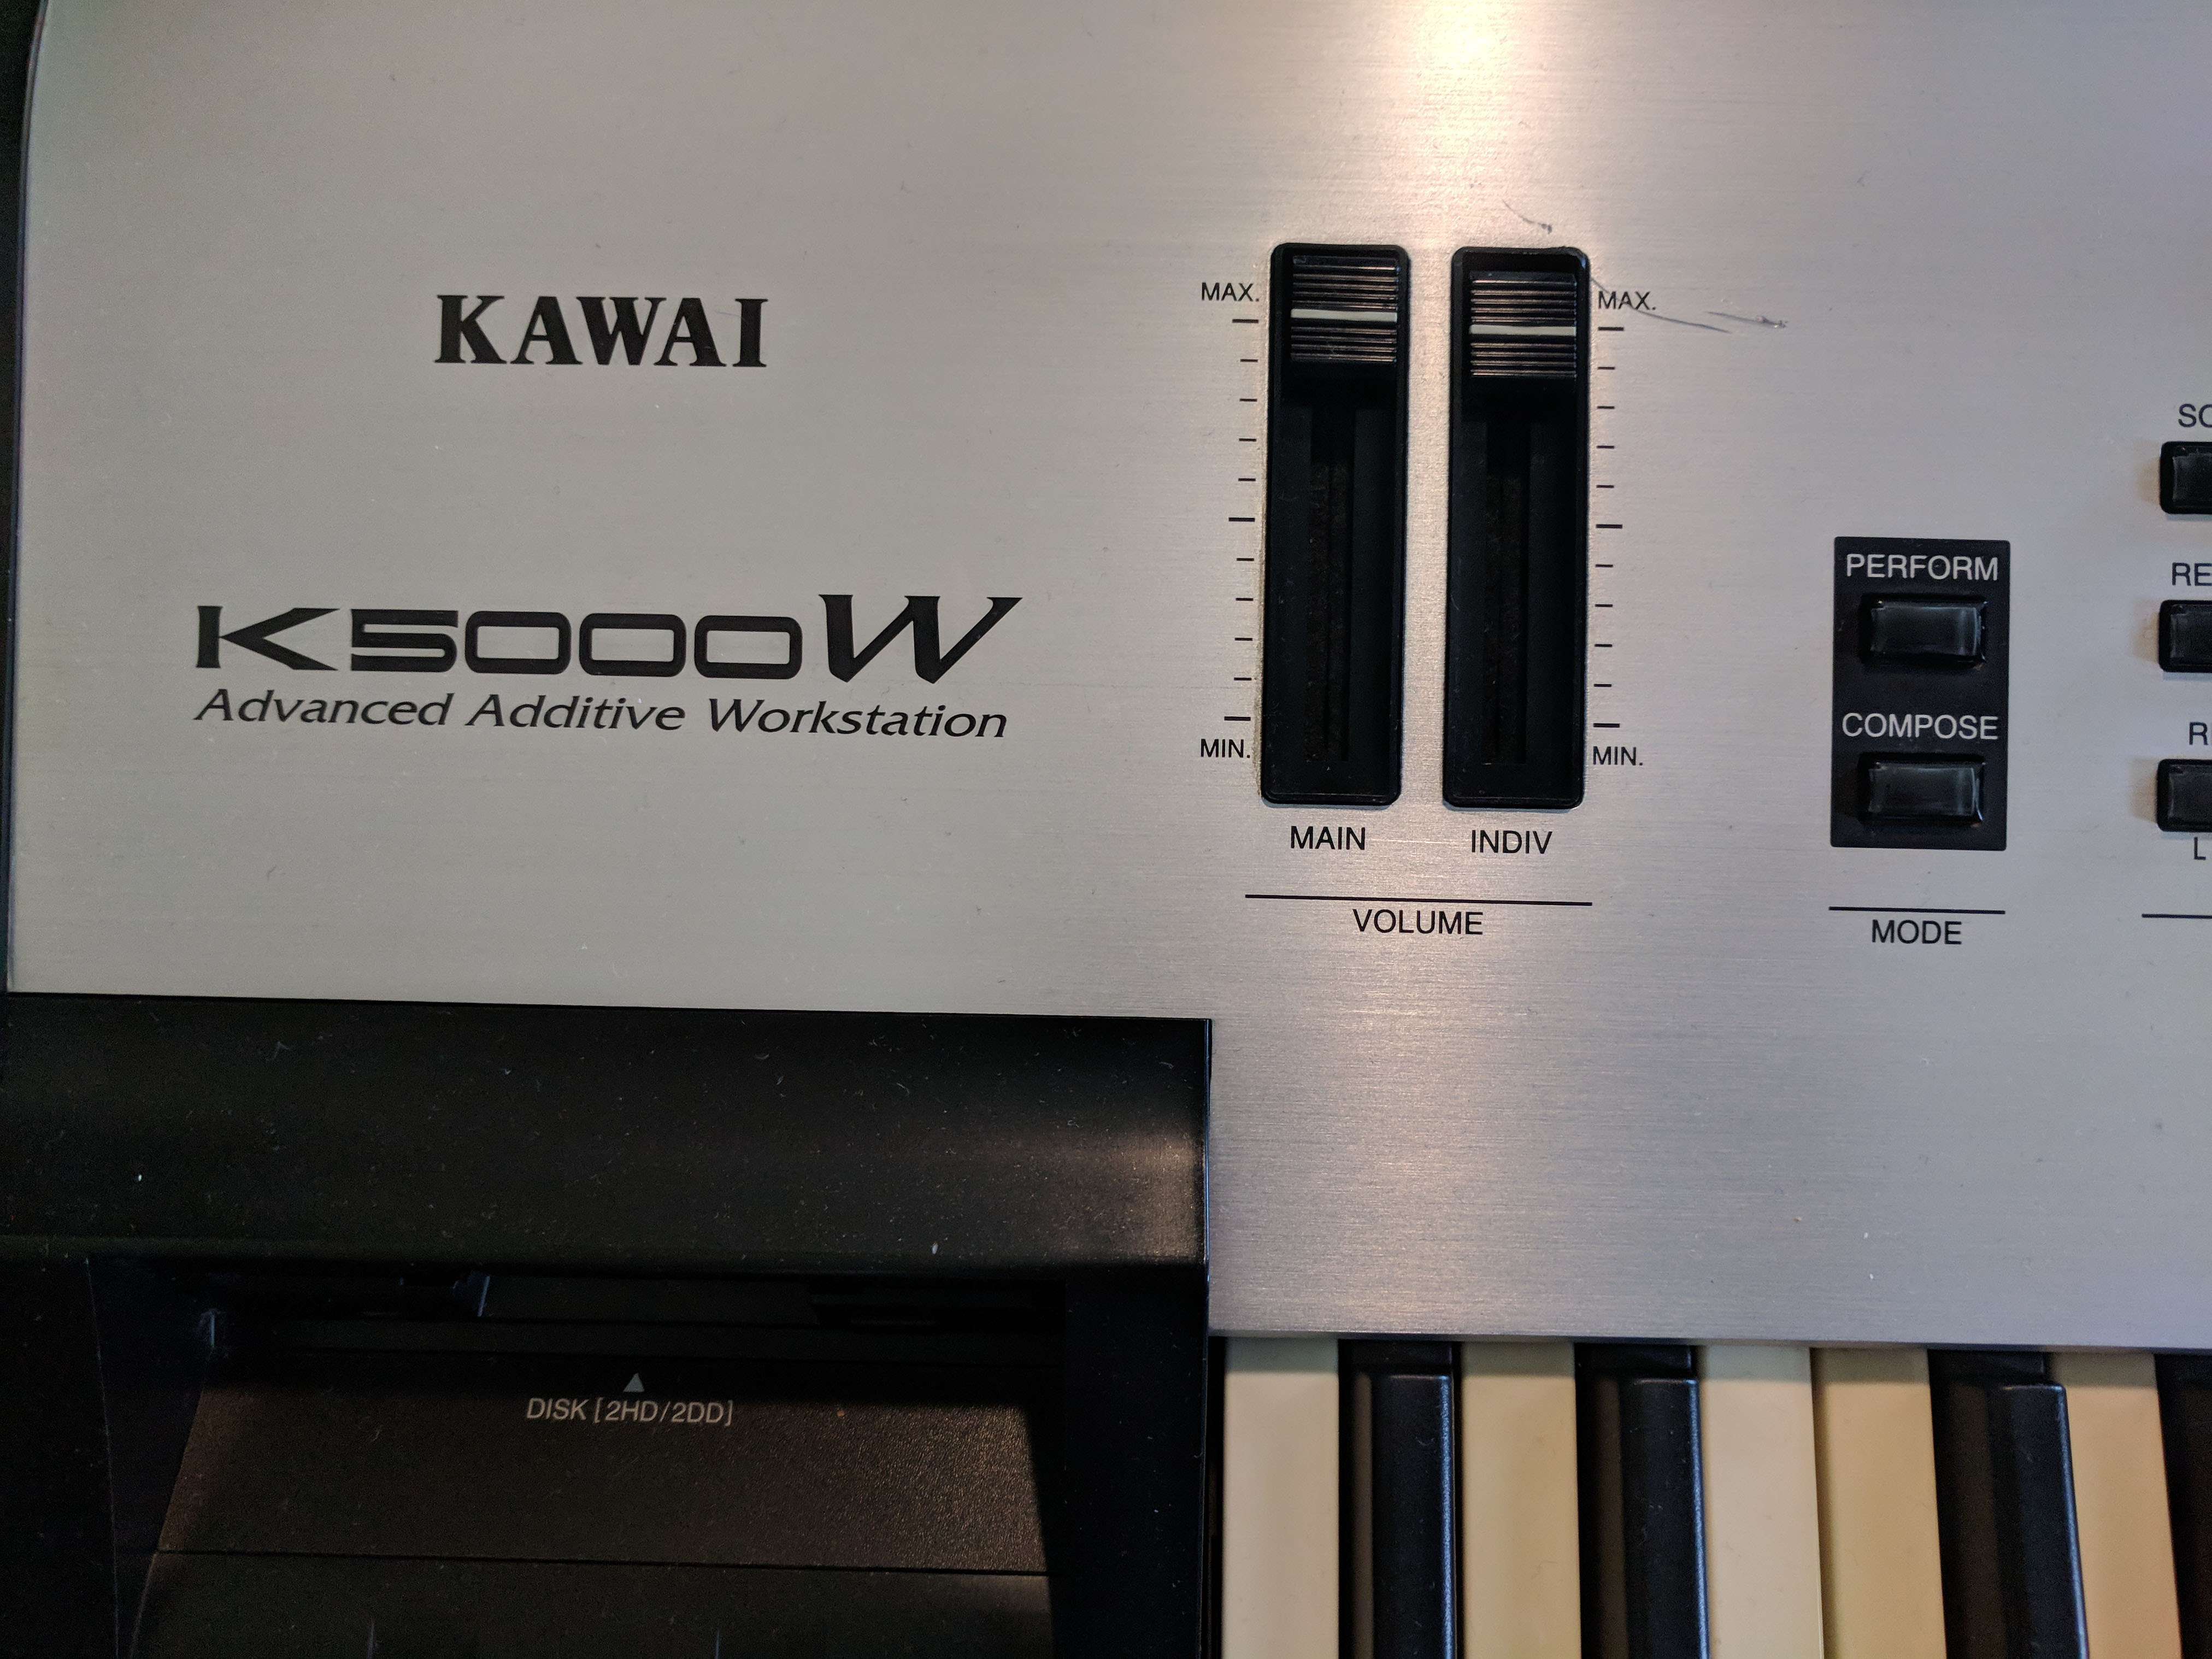 Kawai K5000